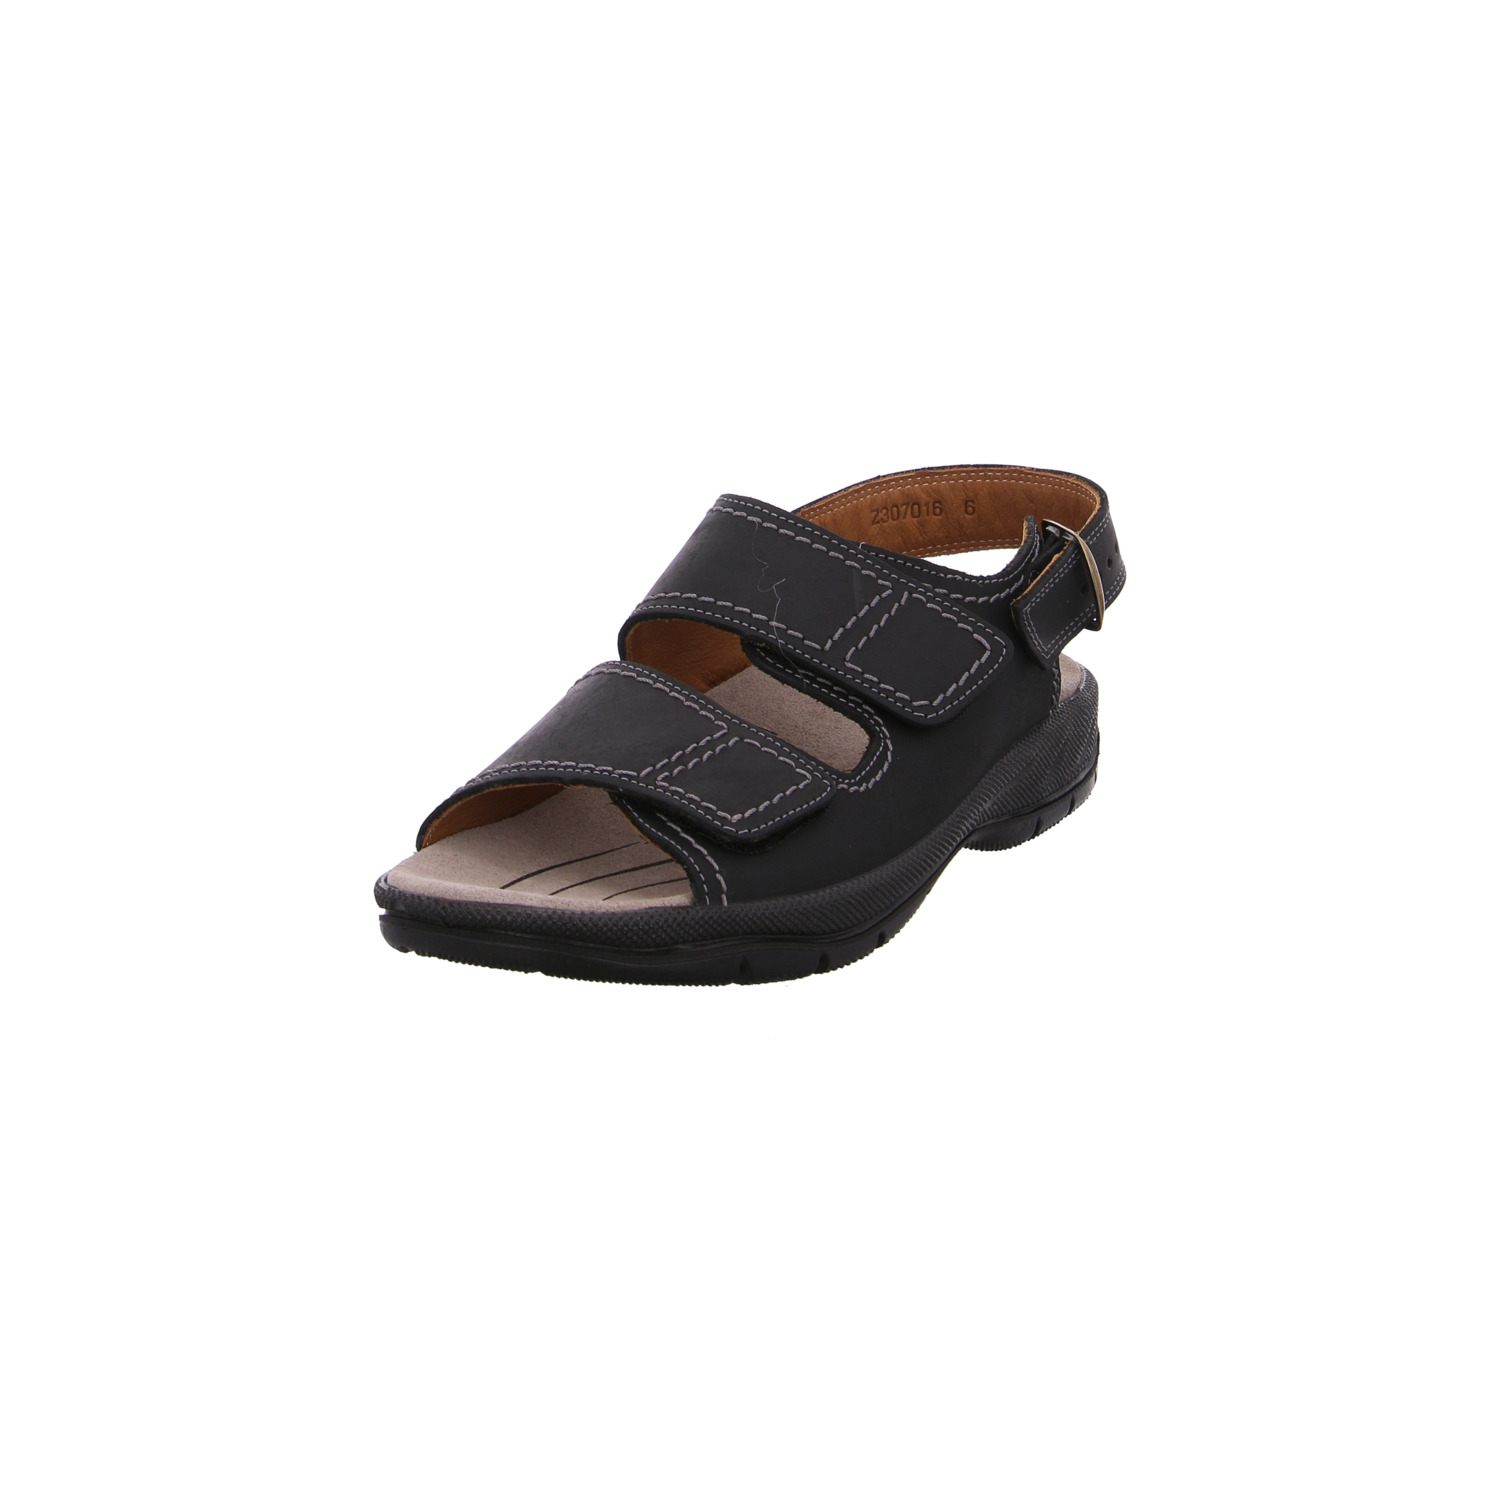 jomos-sandaletten-schwarz-45772-7